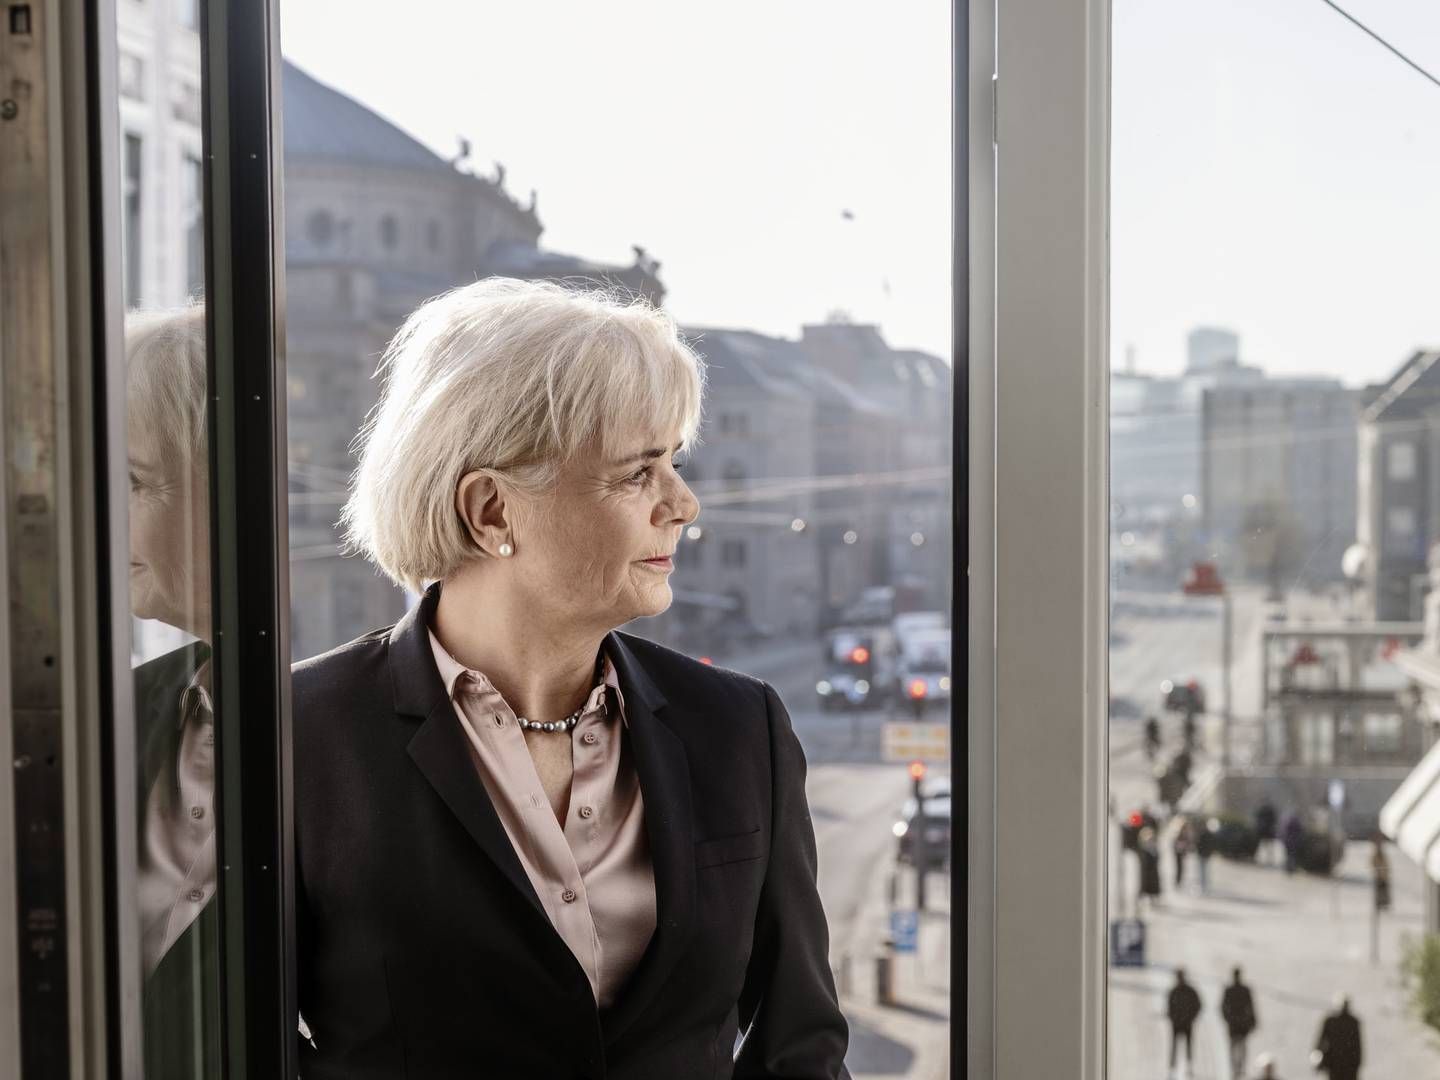 Adm. direktør Karen Frøsig fra Sydbank præsenterede onsdag det bedste resultat i bankens historie med et overskud på 1,9 mia. kr. | Foto: PR / Sydbank/BAM